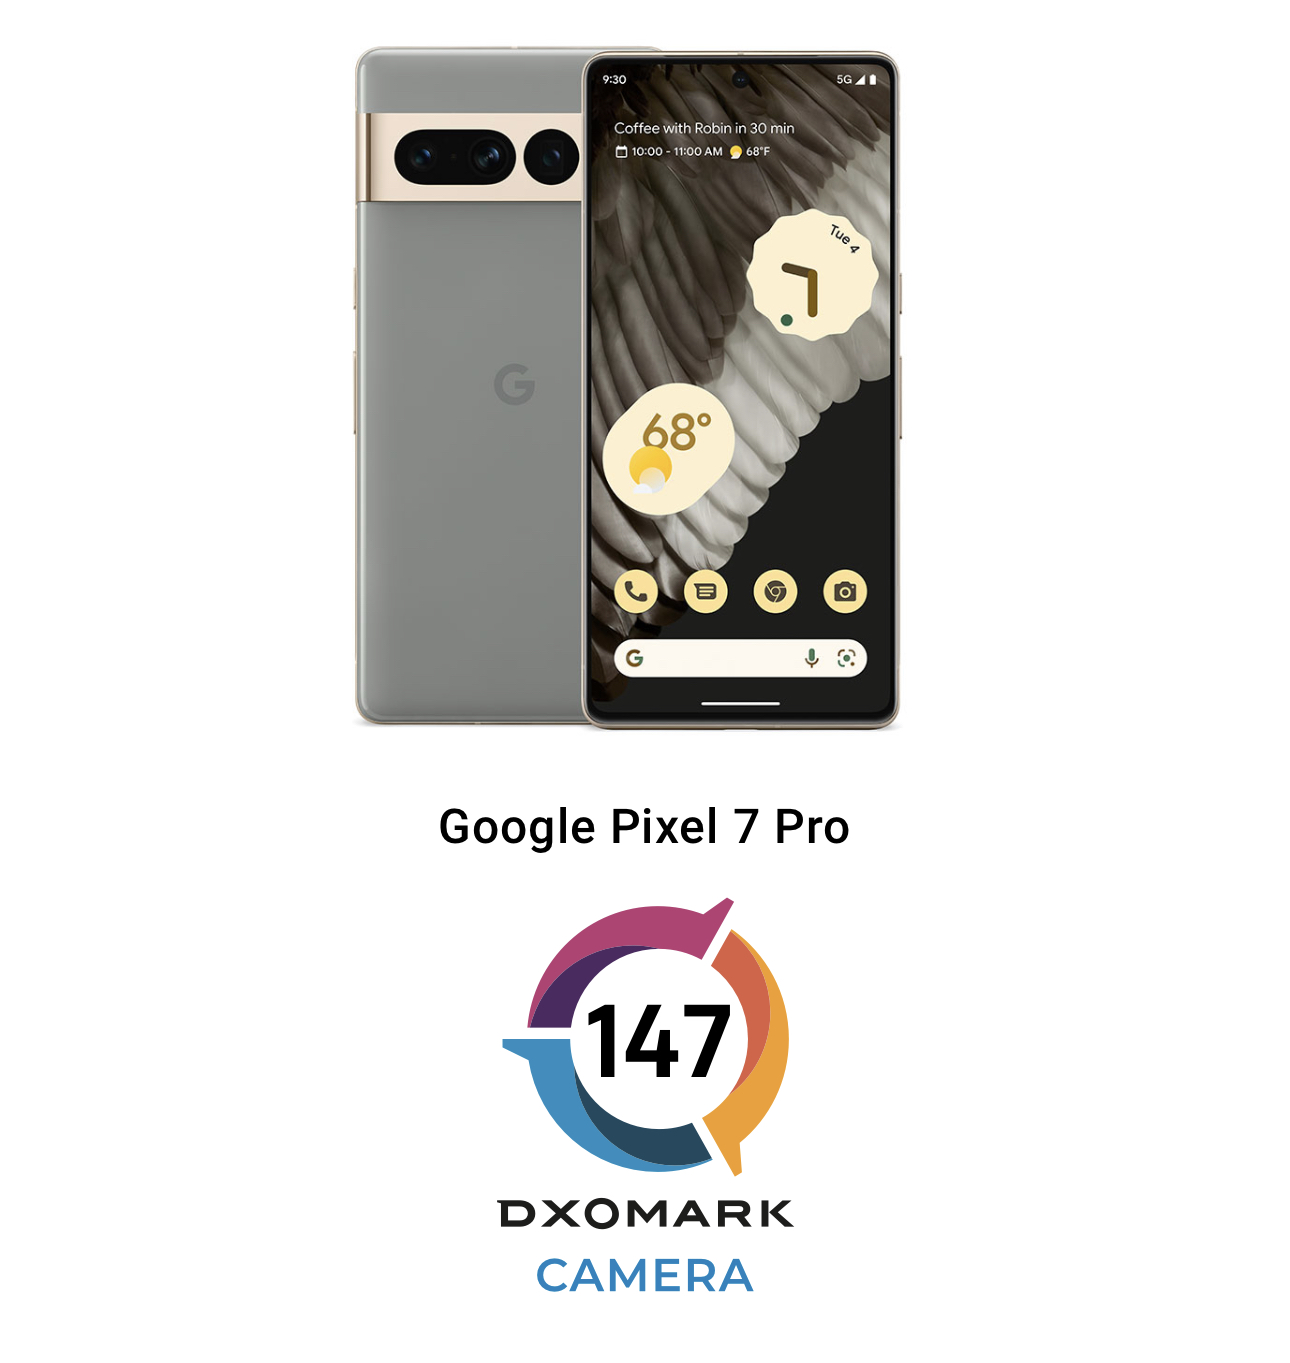 DxOmark beri 147 mata bagi ujian kamera Google Pixel 7 Pro - atasi iPhone 14 Pro 5